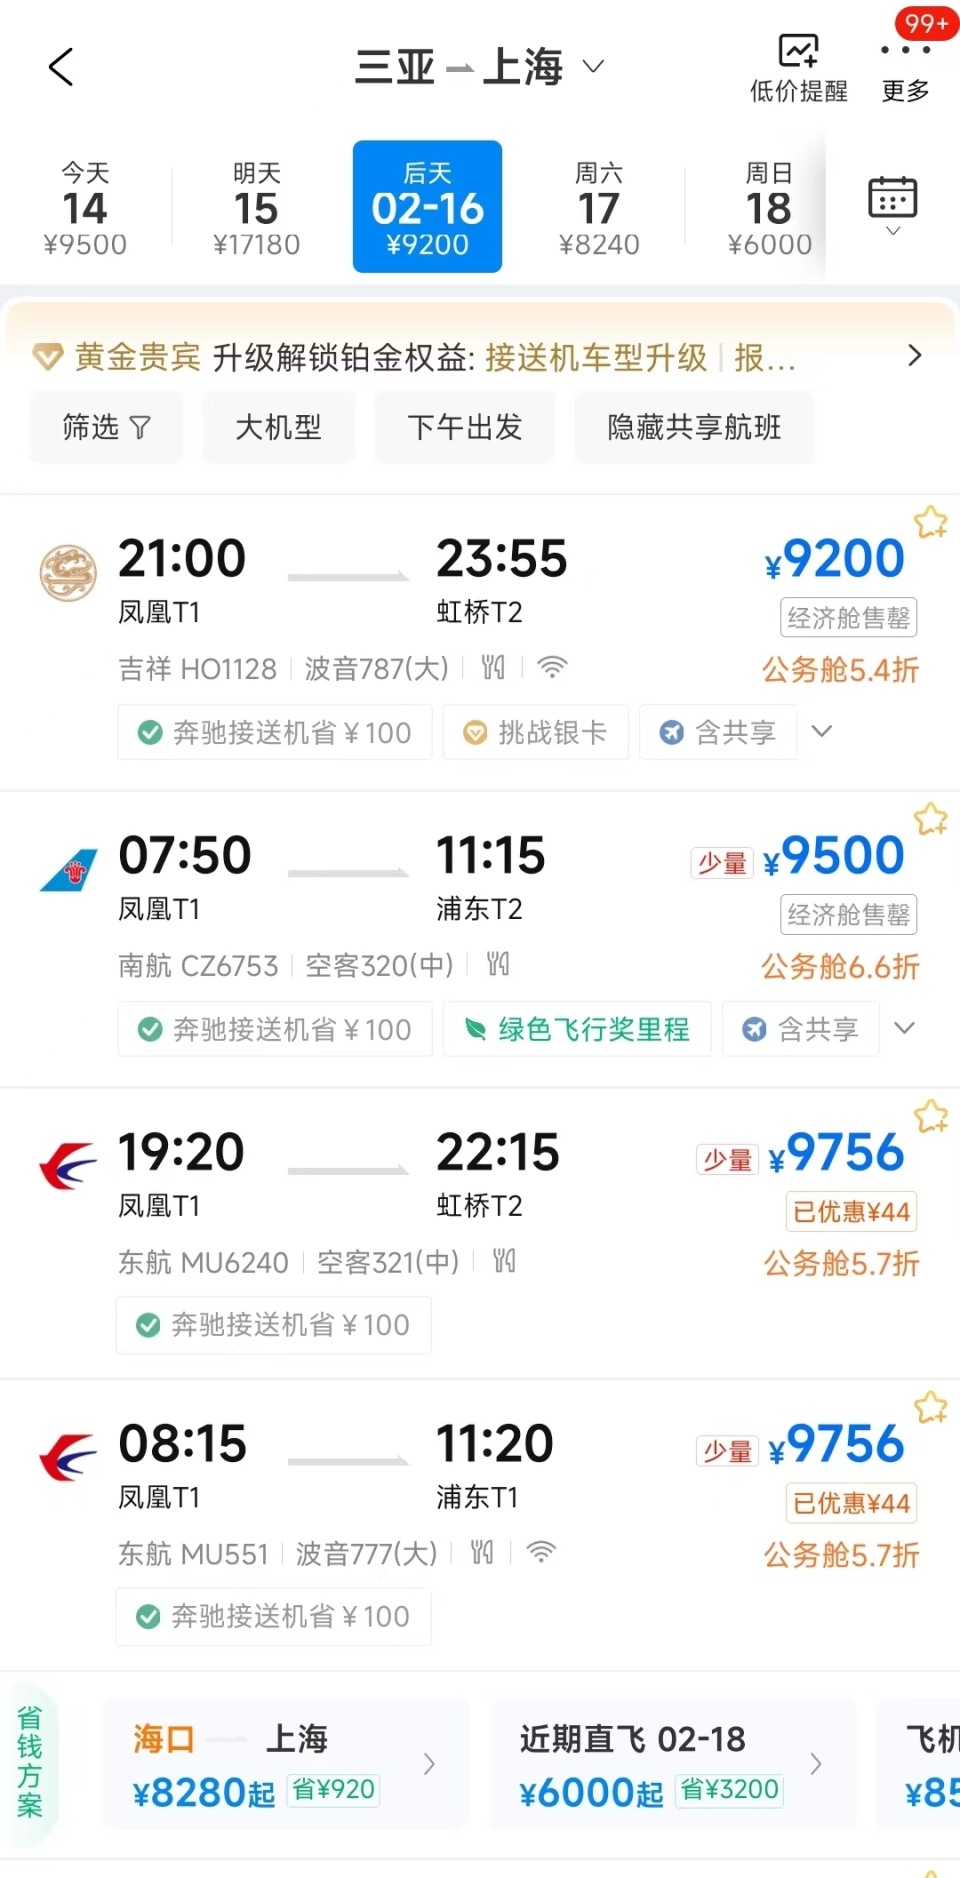 未来五天海南直飞京沪经济舱全售罄小机场城市春节机票预订增2倍